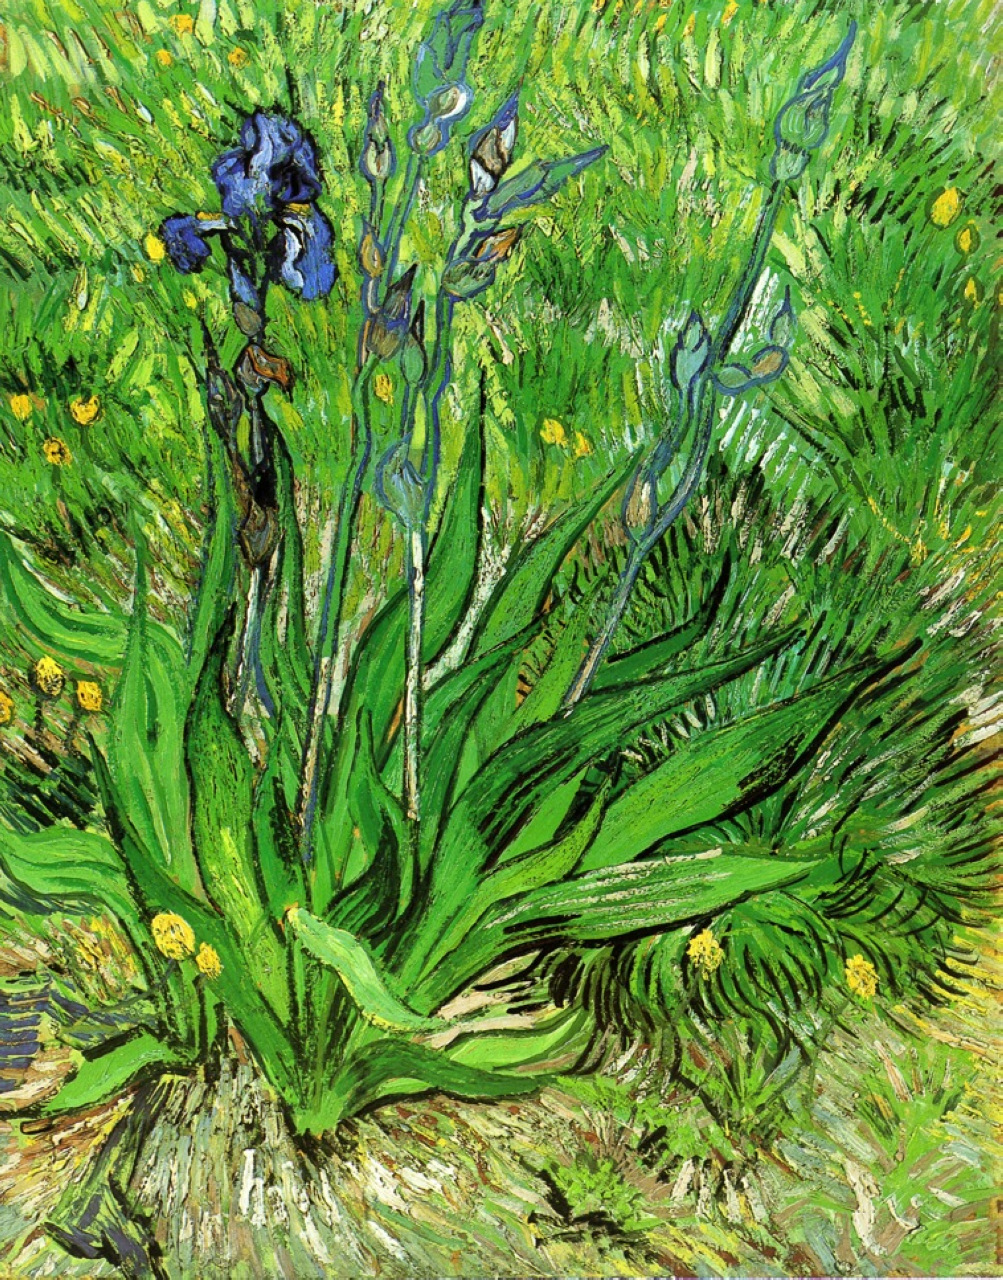 L'iris by Vincent van Gogh - 1889 - 65 x 55 cm 